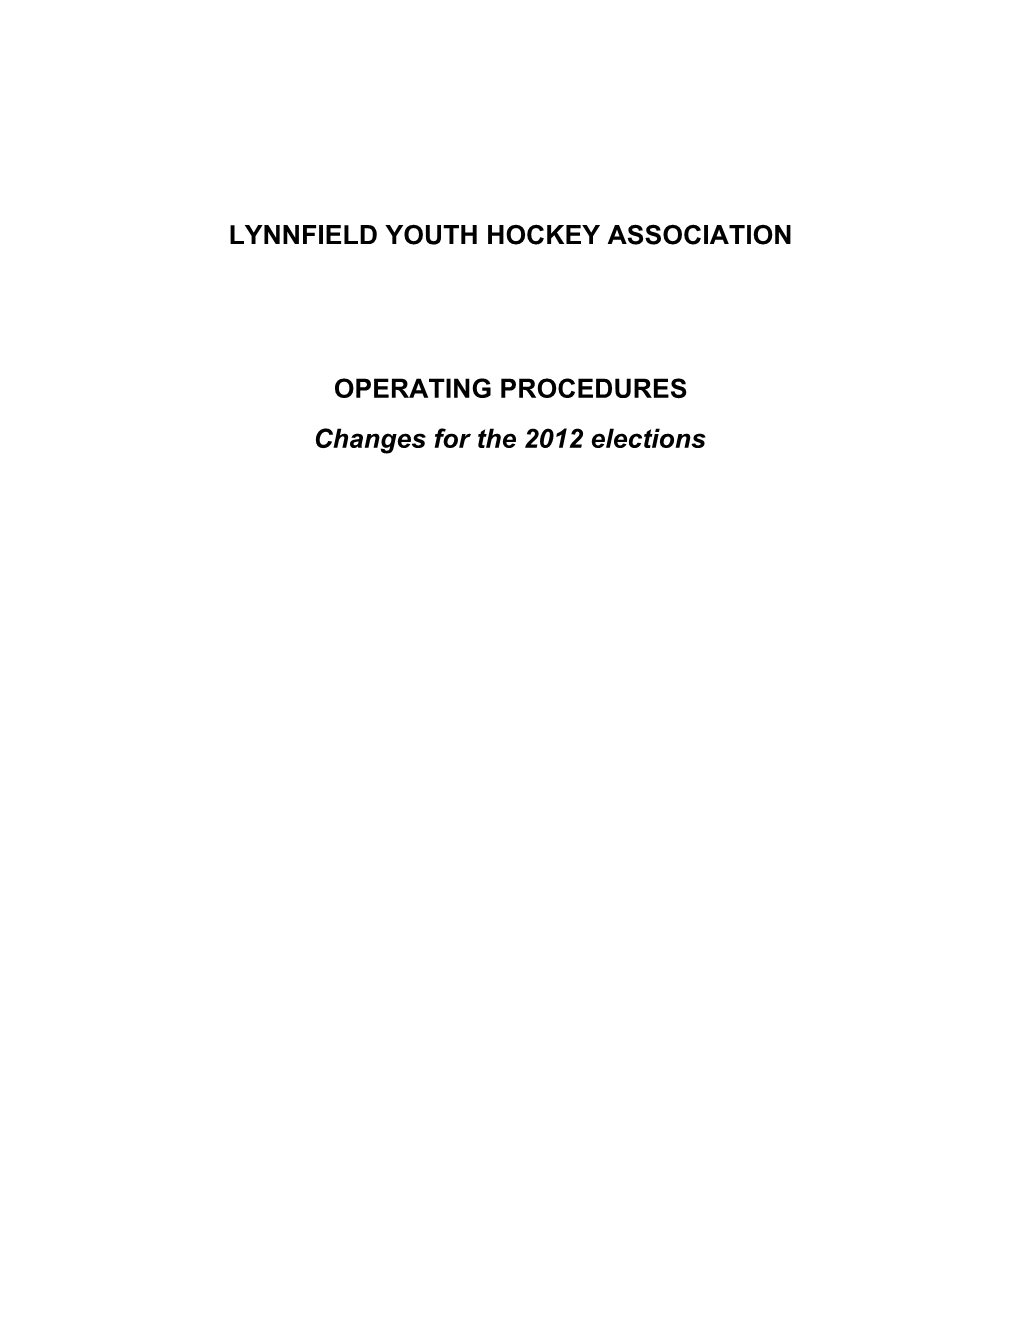 Lynnfield Youth Hockey Association